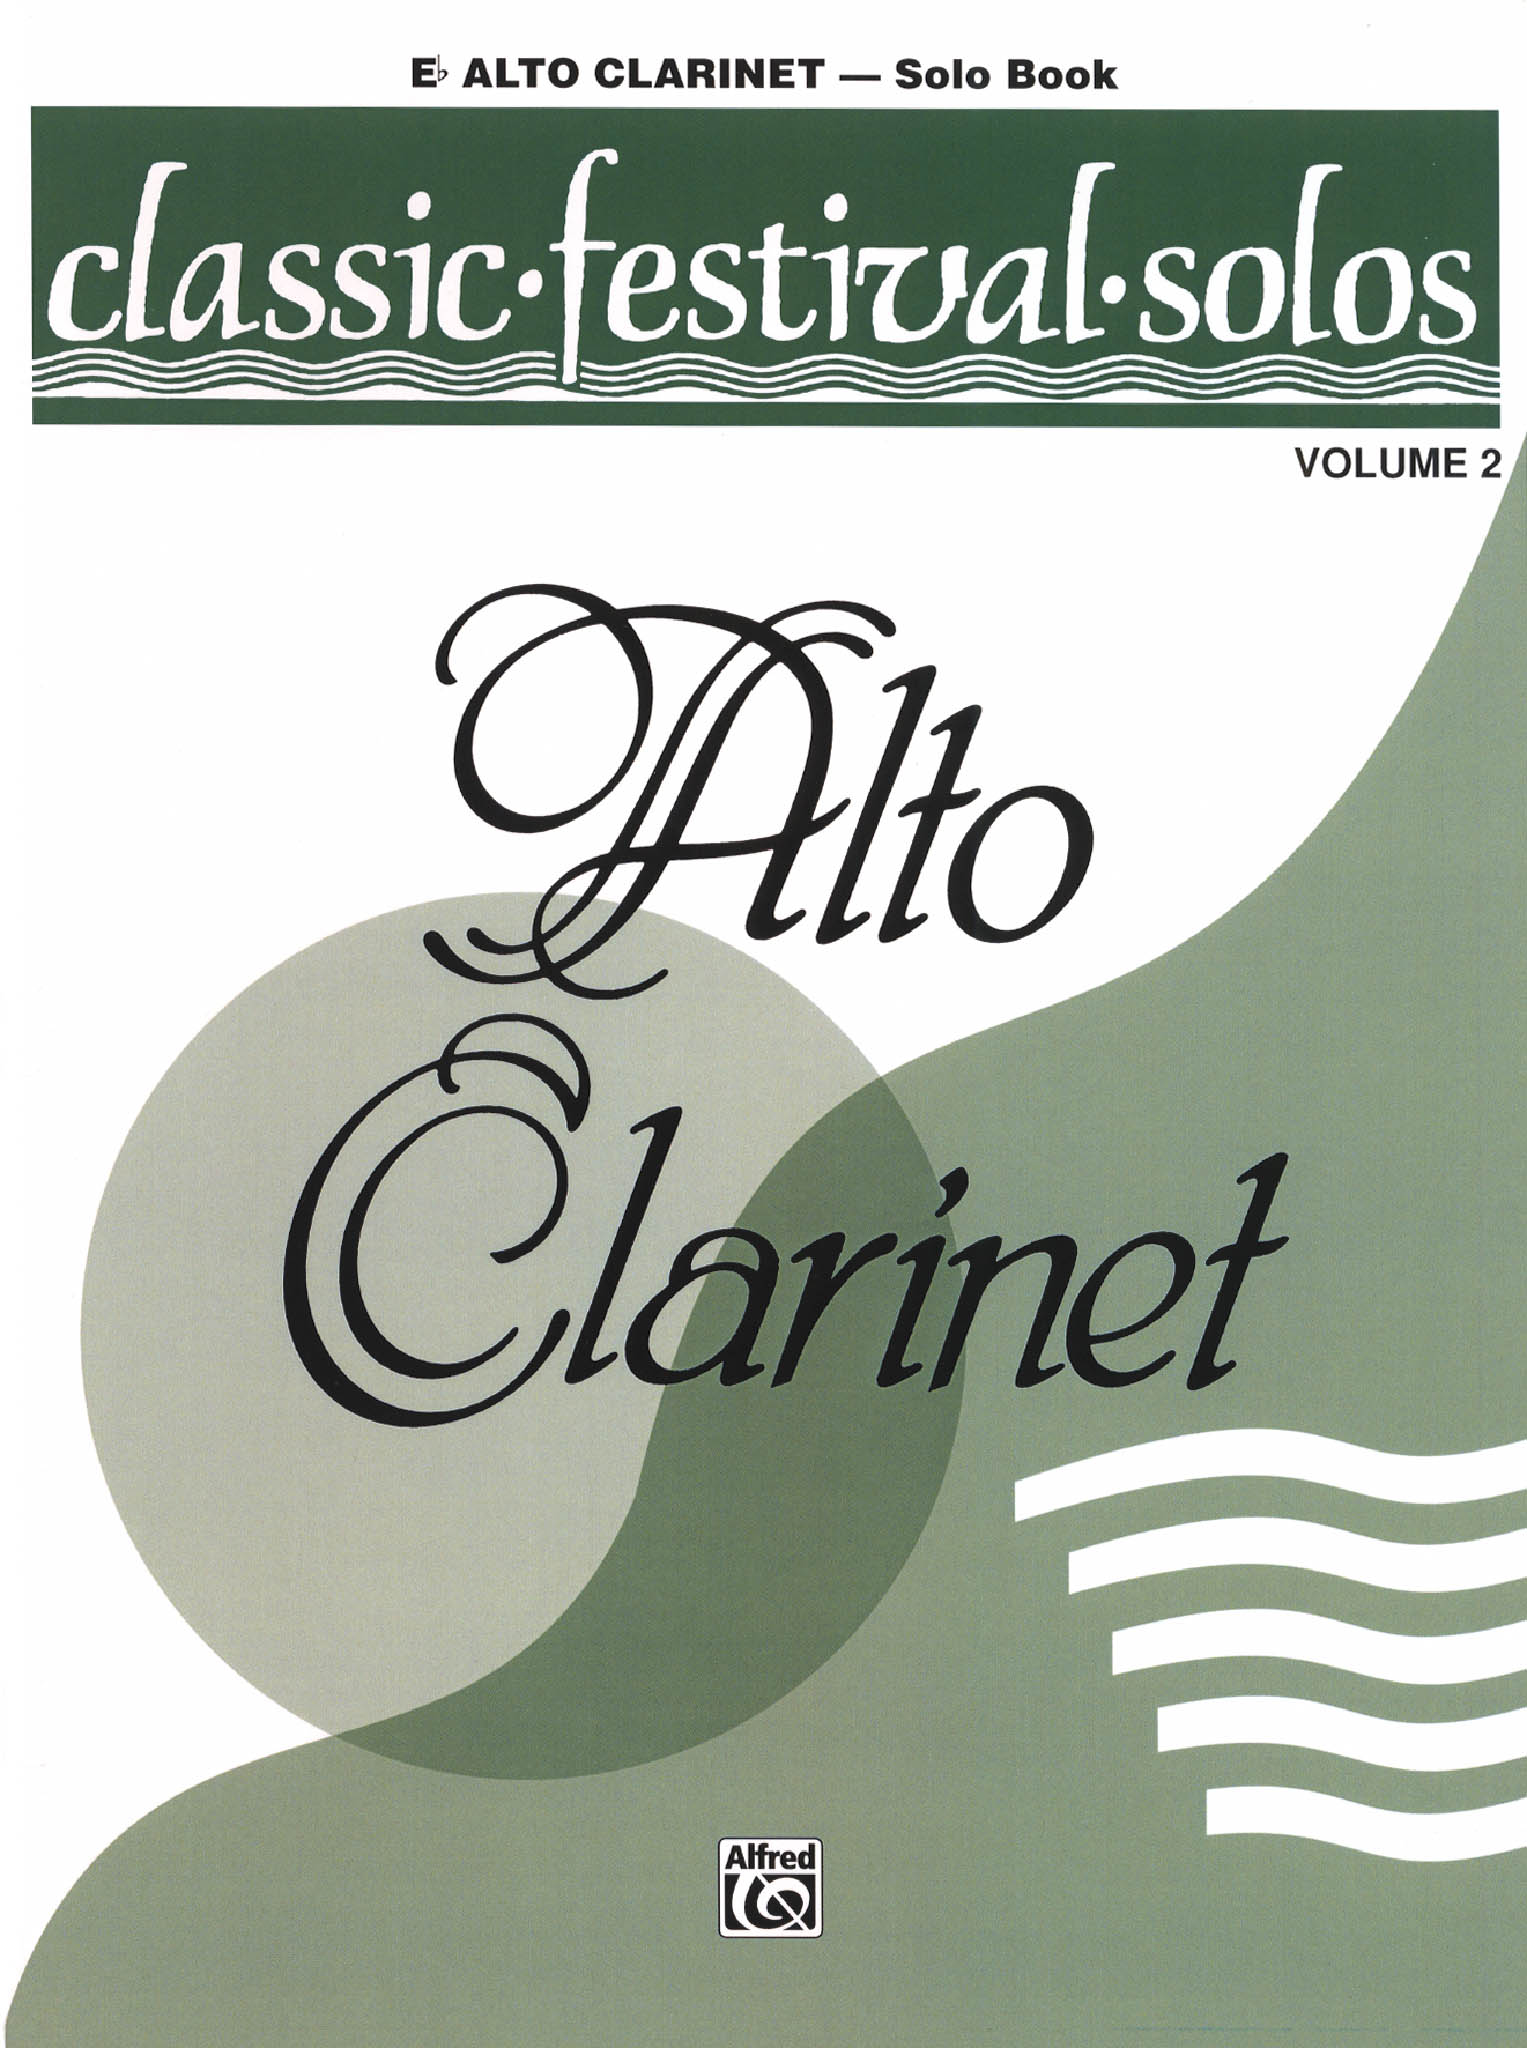 Belwin Classic Festival Solos Alto clarinet Cover